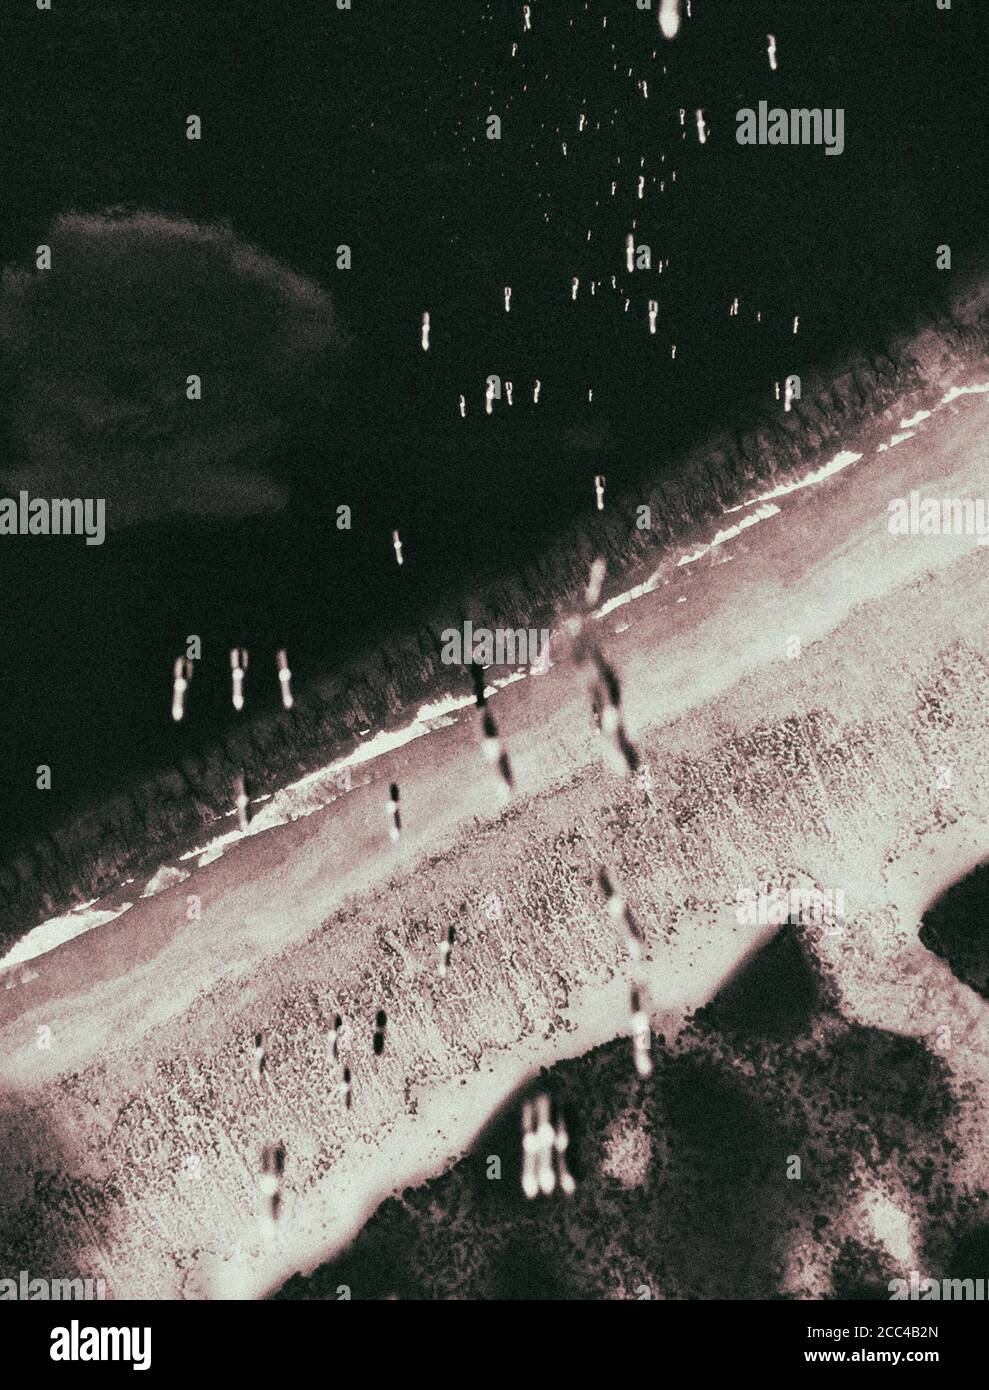 RAID des bombardiers DE L'US Air Force (USAF), des bombes américaines tombent sur le territoire de l'Imperial Japan pendant le tapis de bombardement. Japon, 1945 Banque D'Images